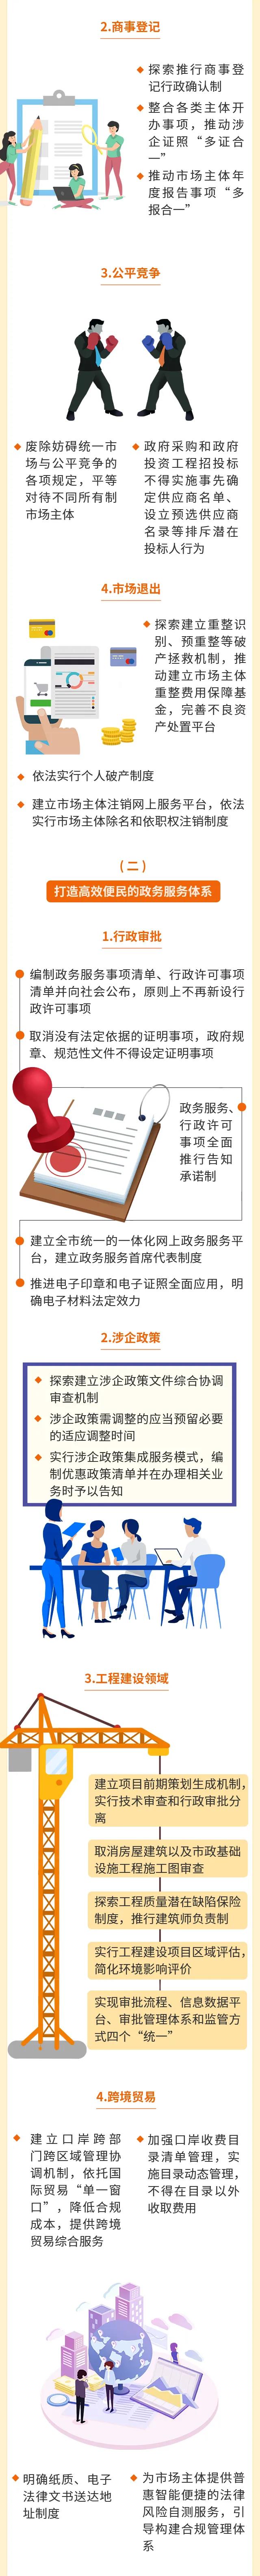 一图读懂《深圳经济特区优化营商环境条例》2.jpg